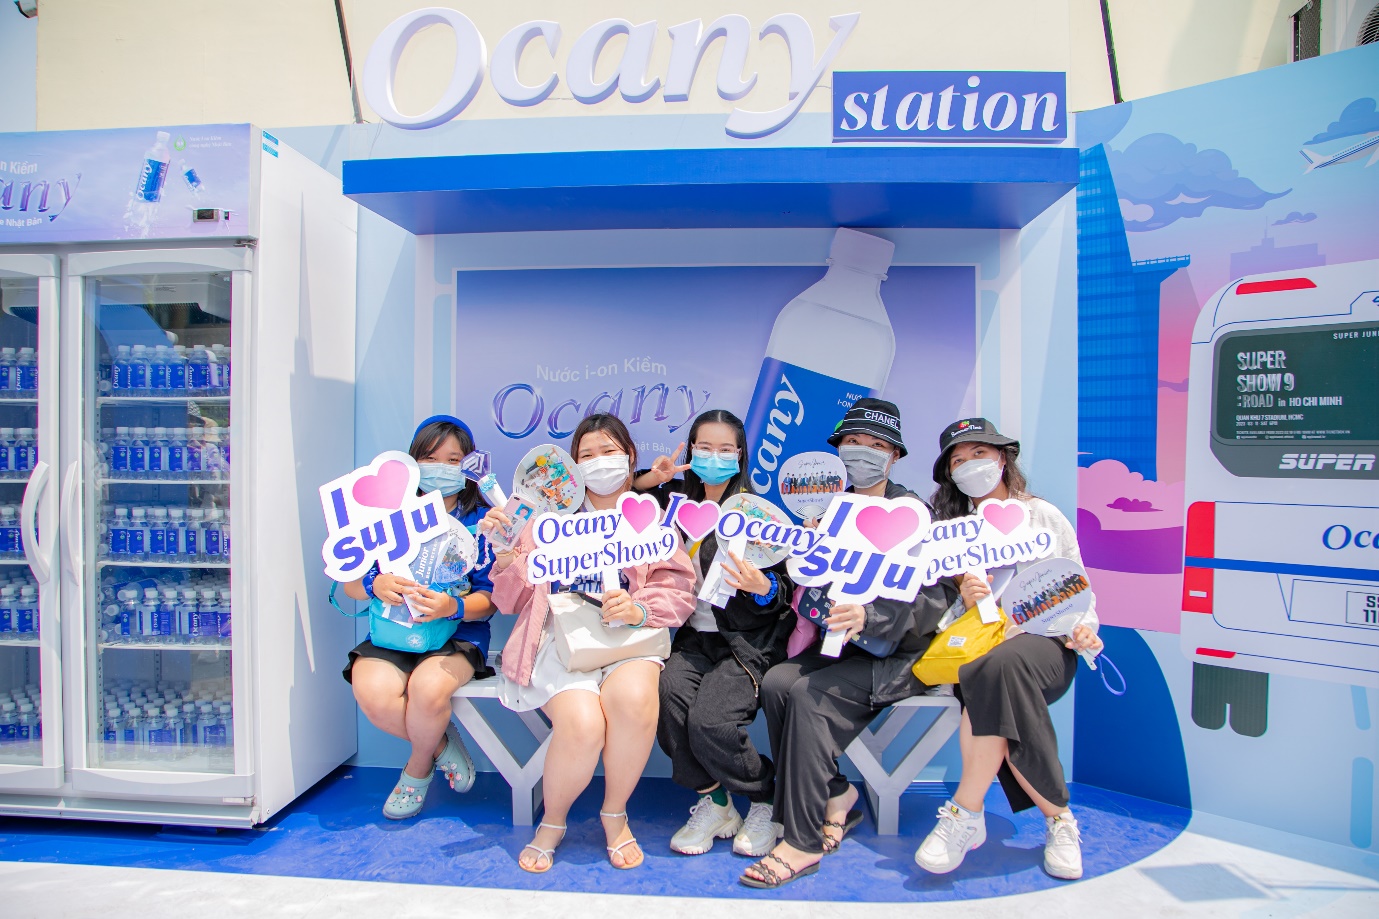 Lý do Ocany Station thu hút fan tại Super Show 9 - Ảnh 1.